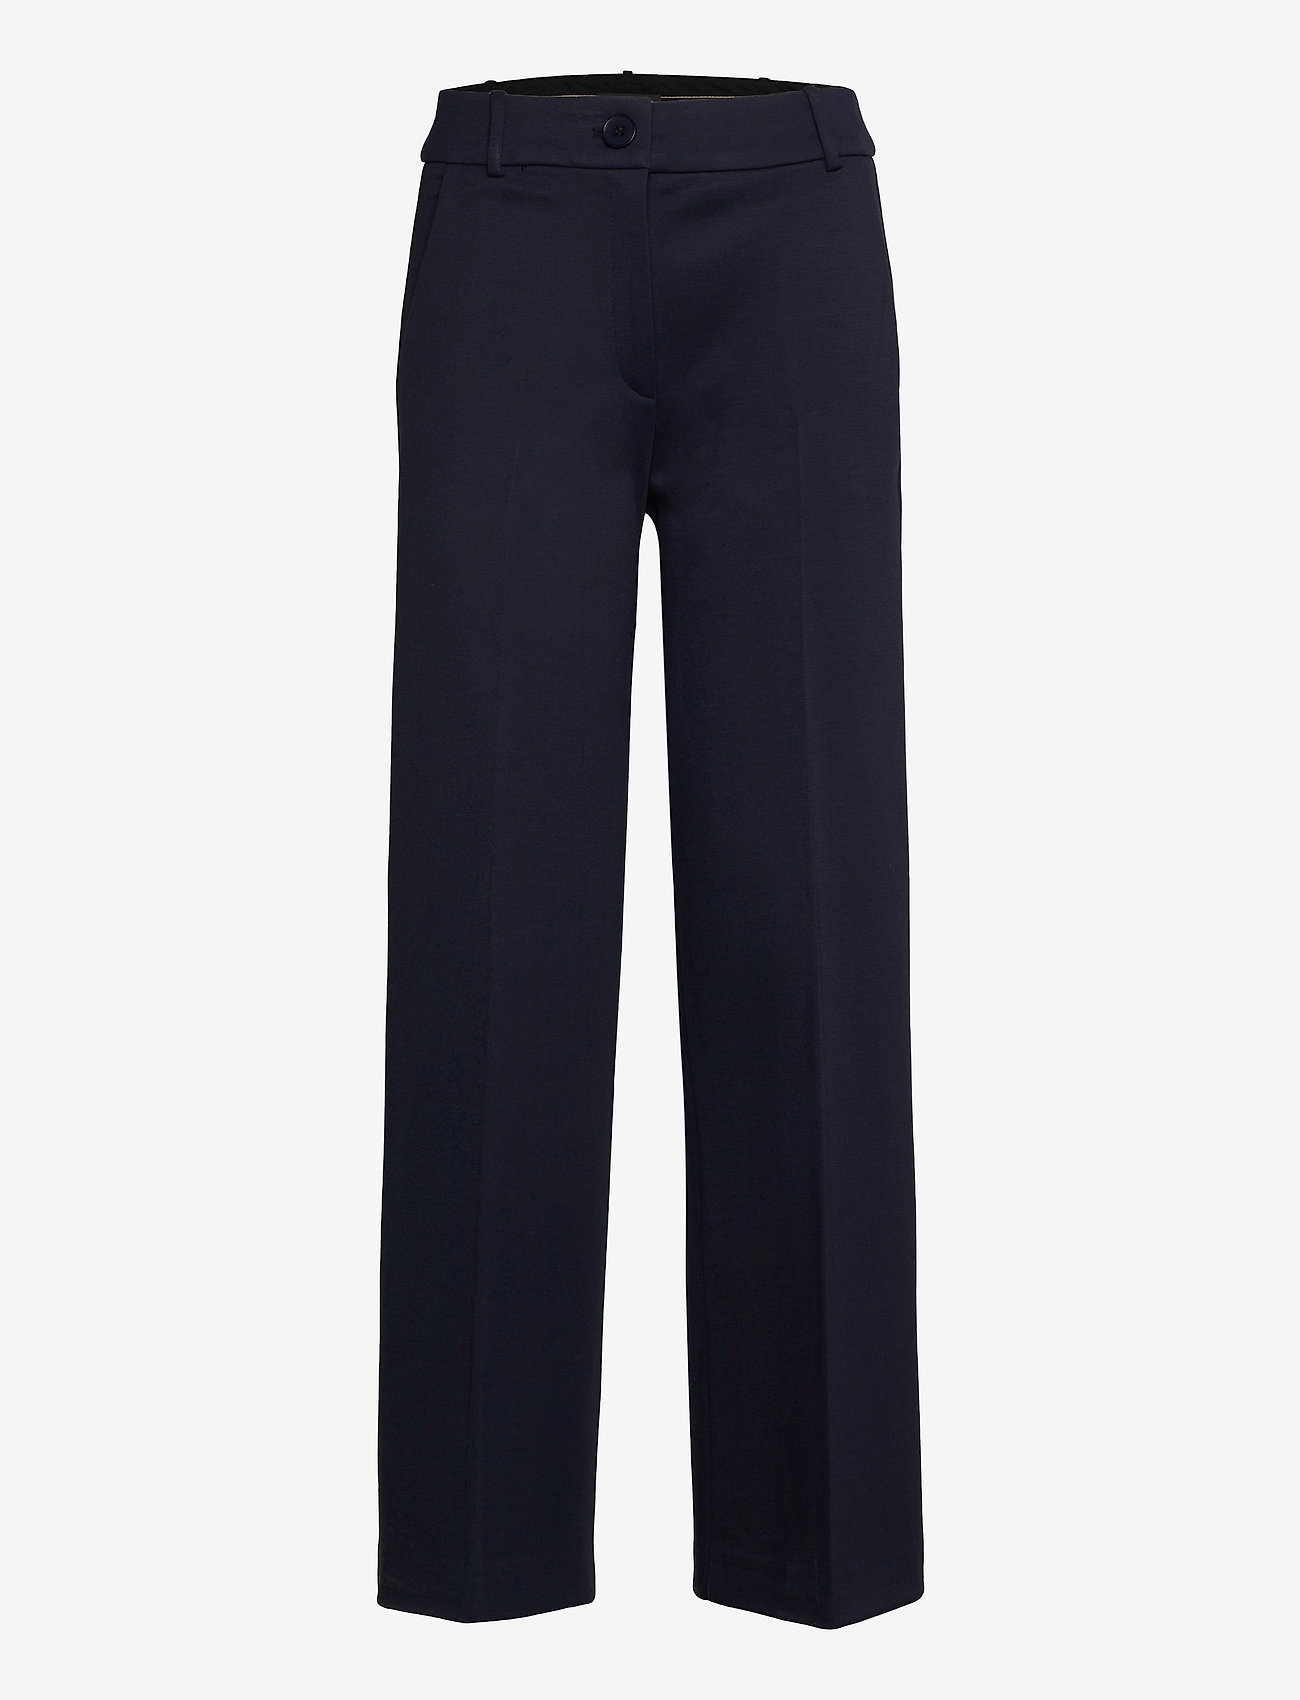 Esprit Collection - Pants woven - puvunhousut - navy - 0